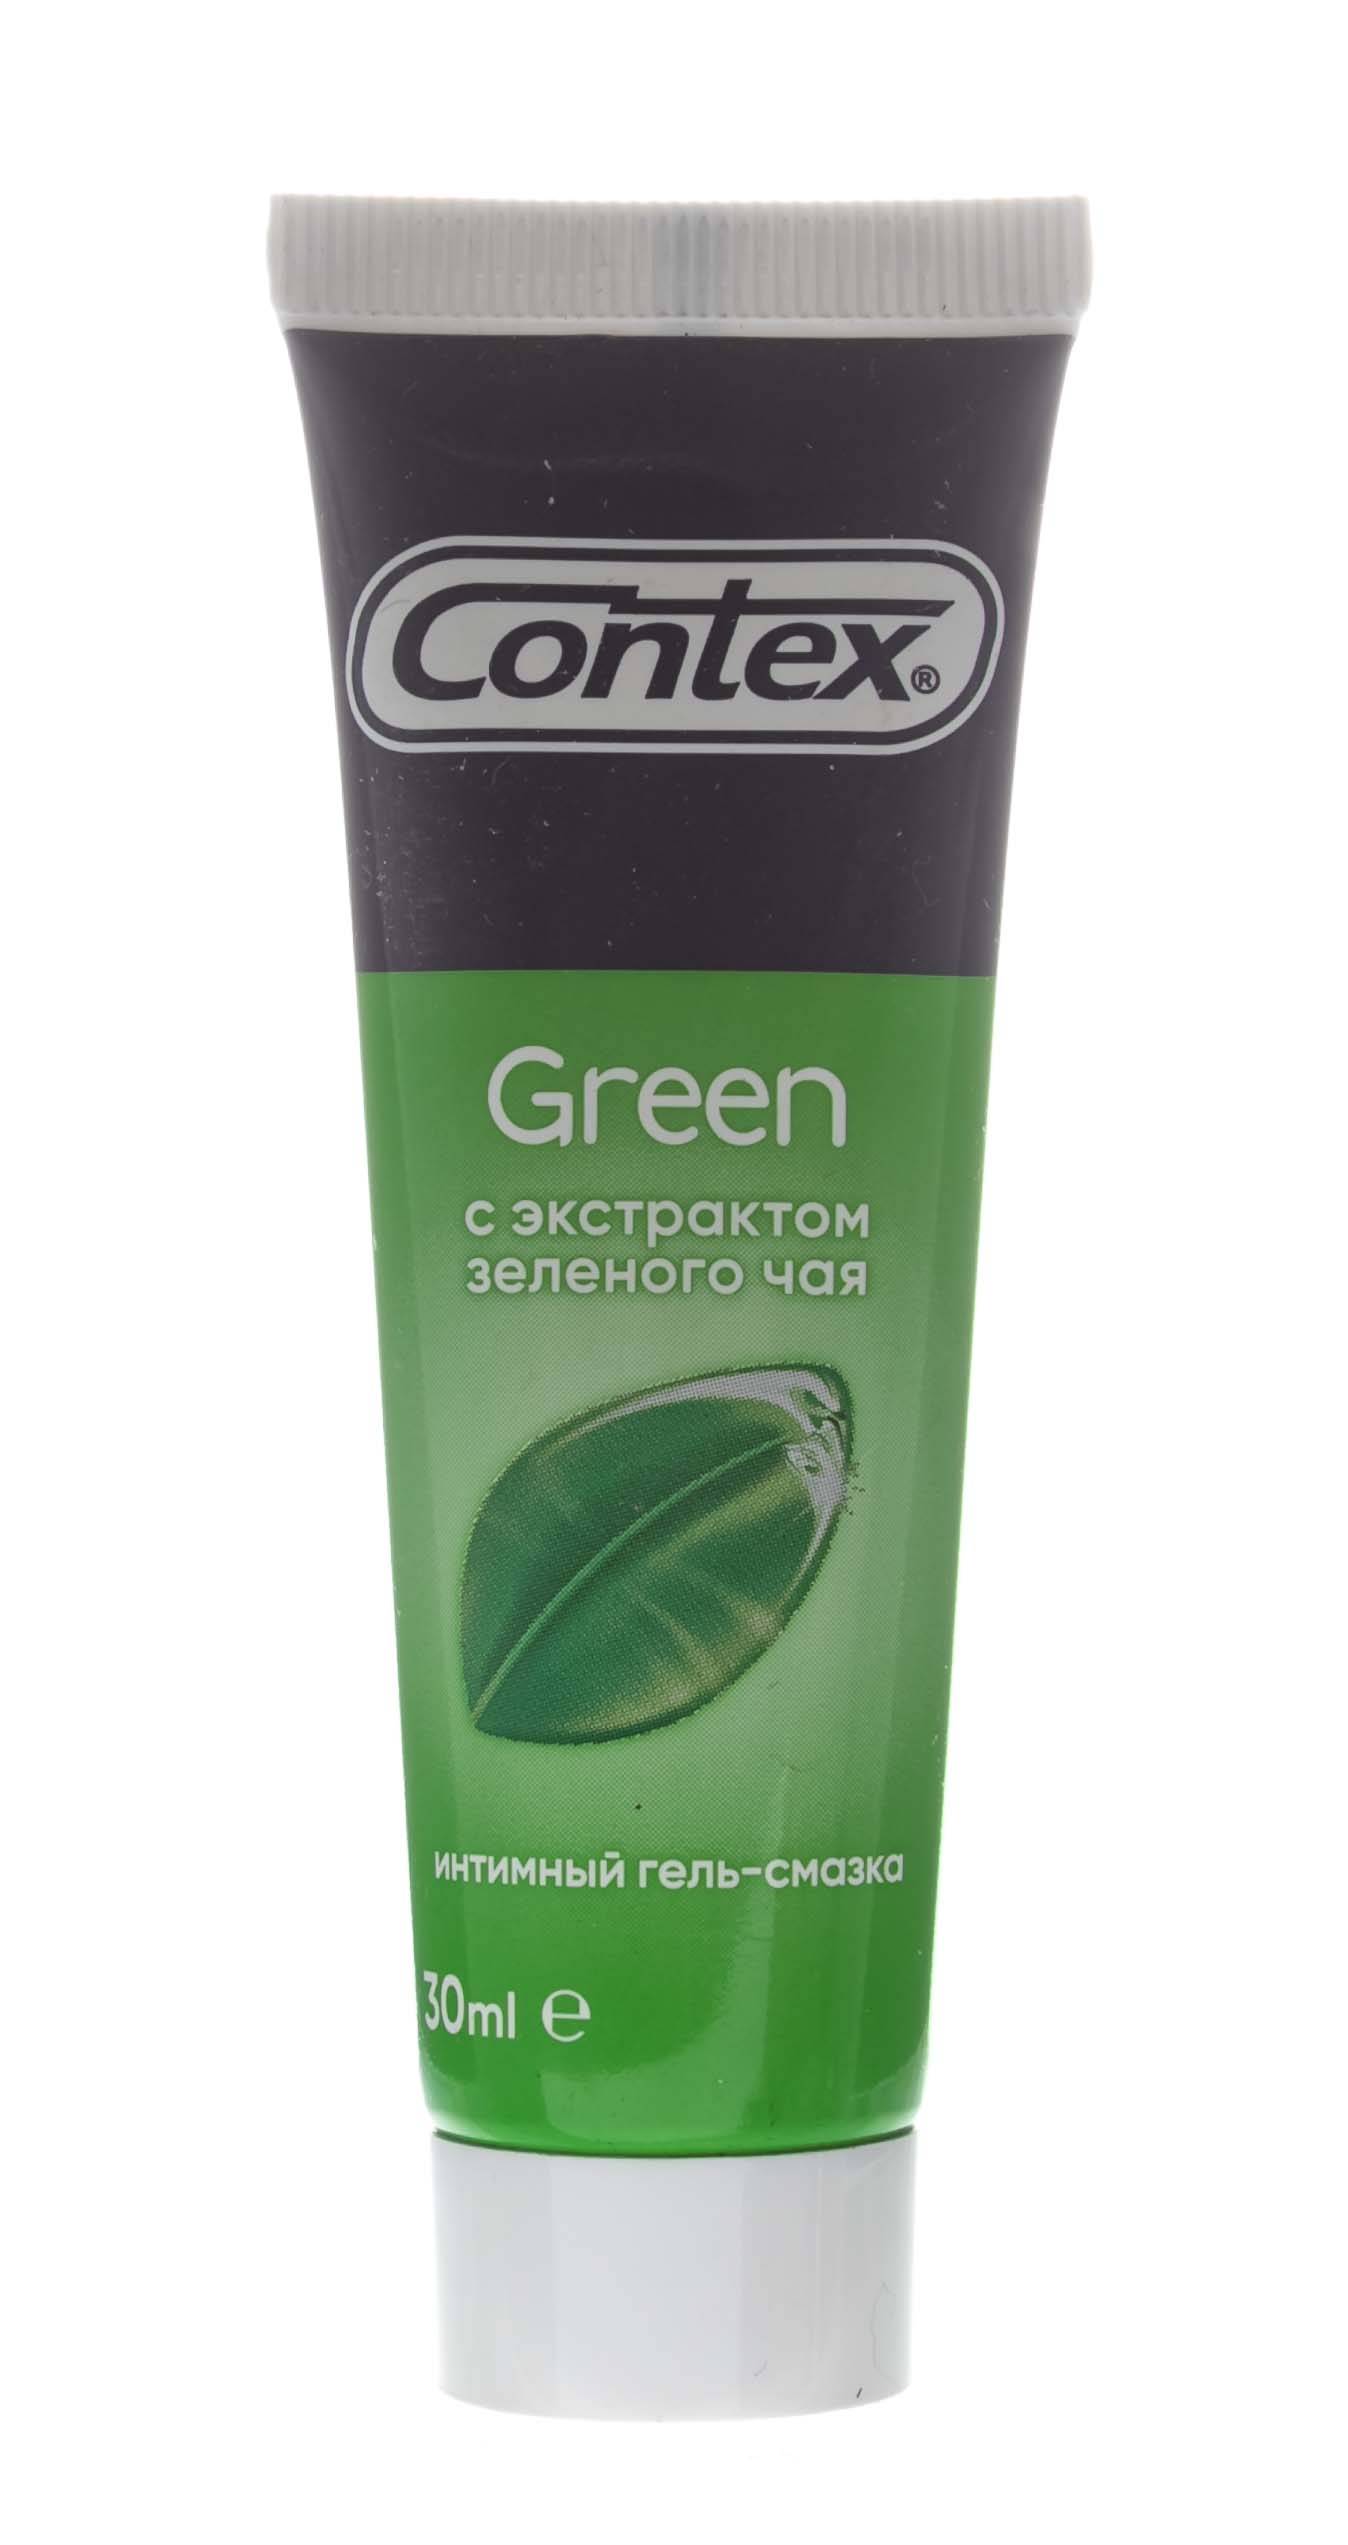 Контекс Гель-смазка Green, 30 мл (Contex, Гель-смазка) фото 0